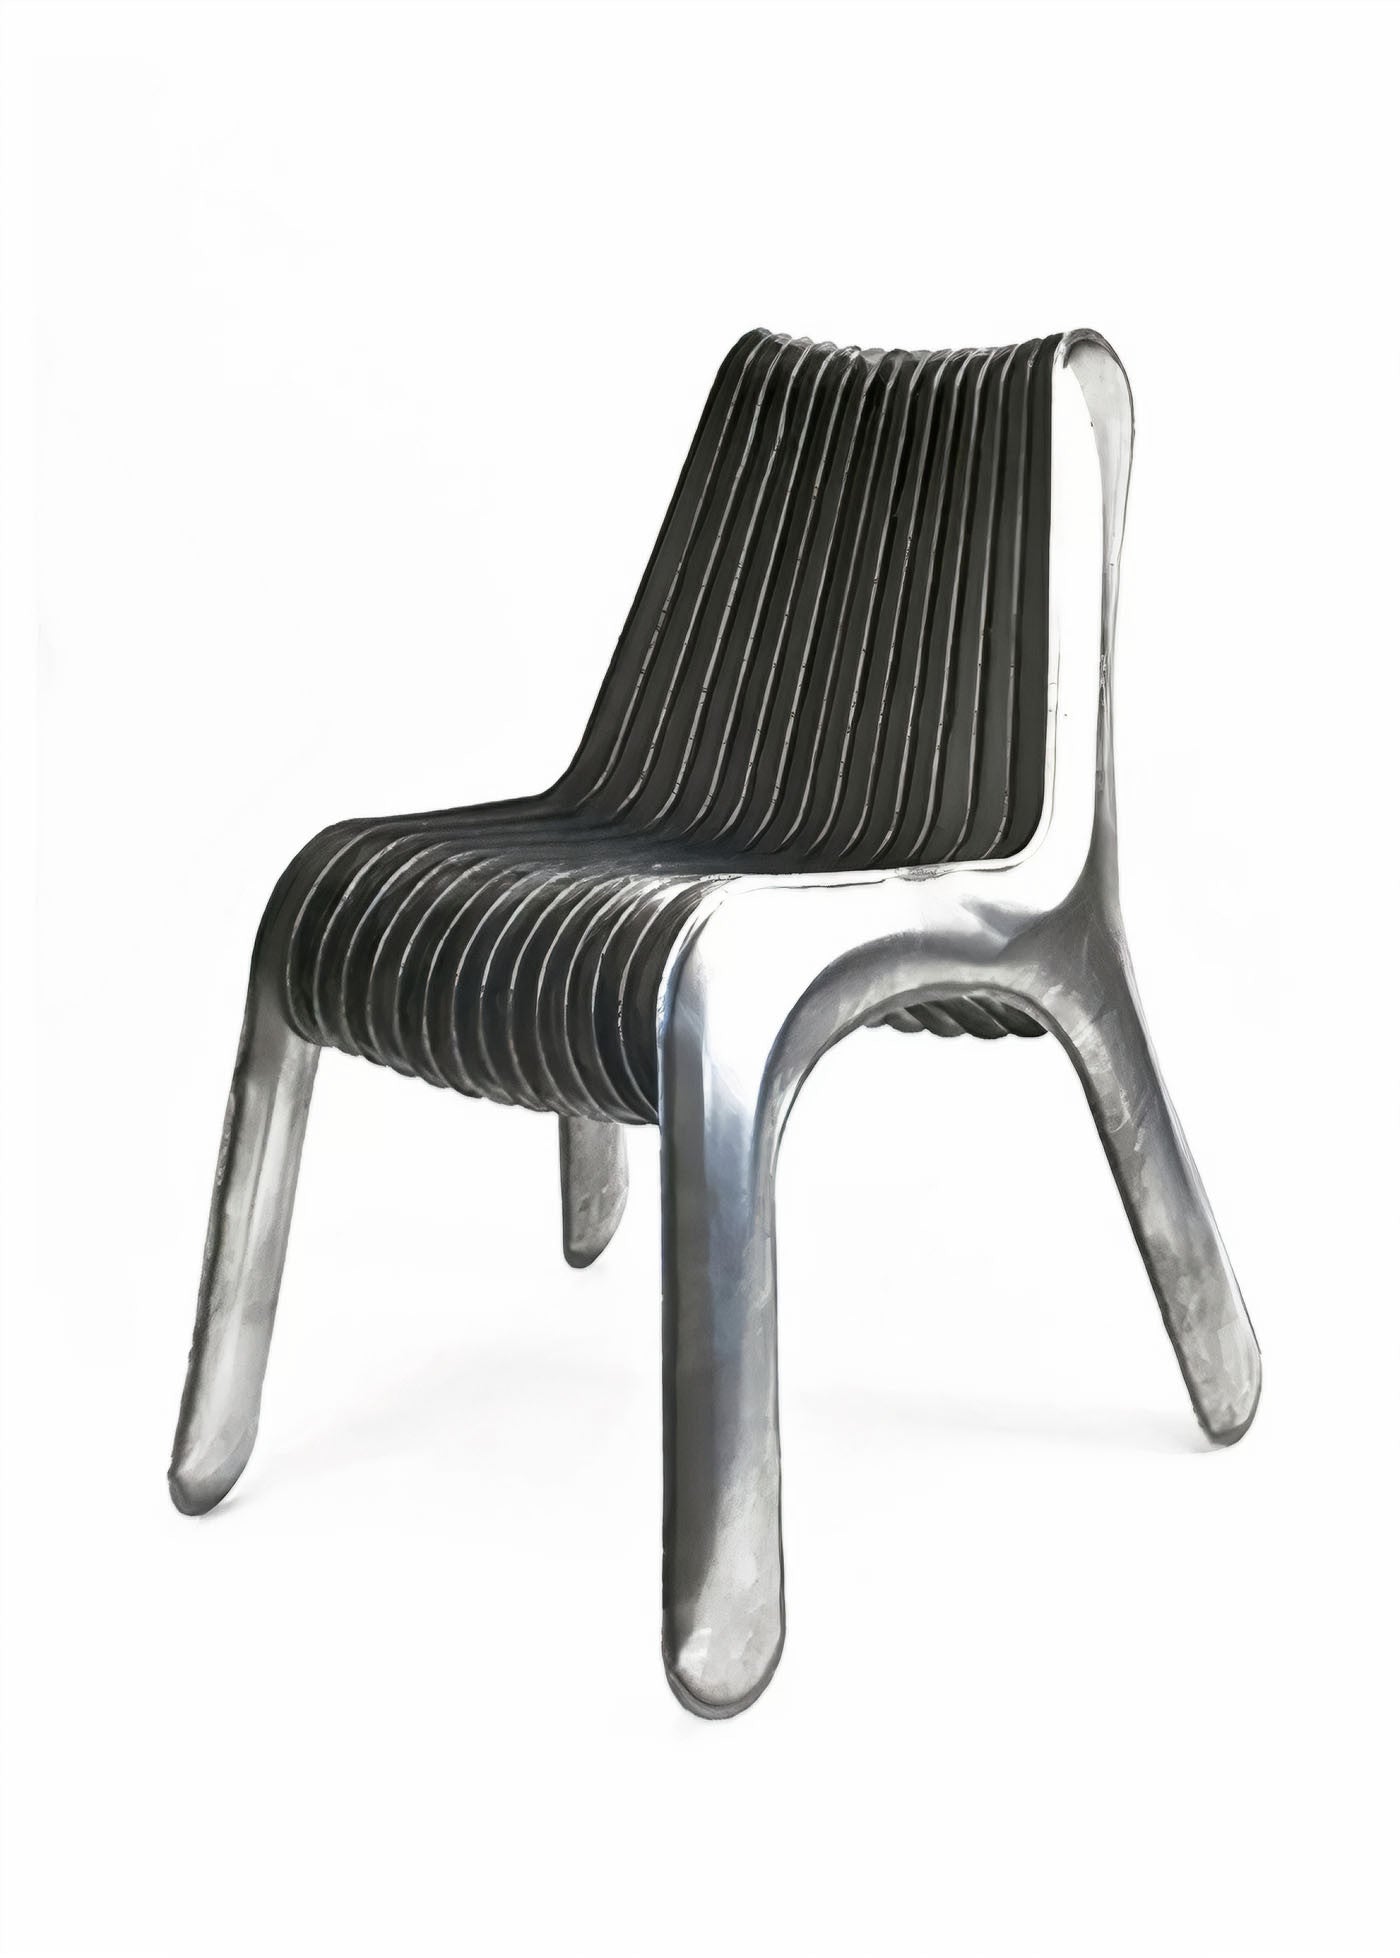 Steel In Rotation Chairs|Seatings|Zieta